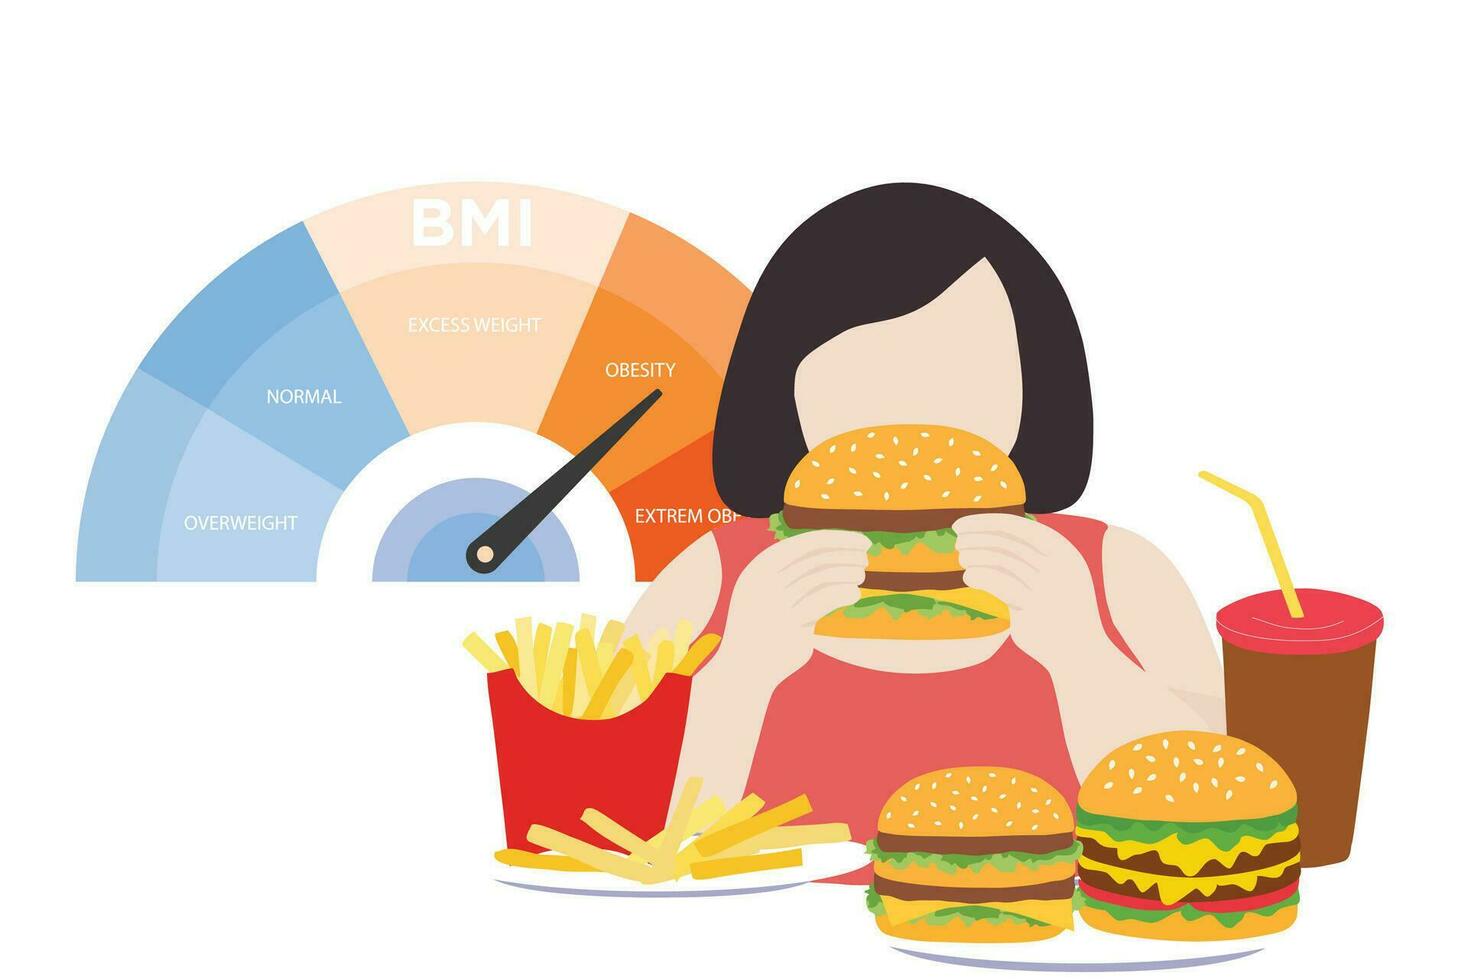 graisse femme avec en surpoids corps et bmi corps Masse indice obèse escalader. obésité et mauvais pour la santé nutrition nourriture avec médical santé problème vecteur illustration